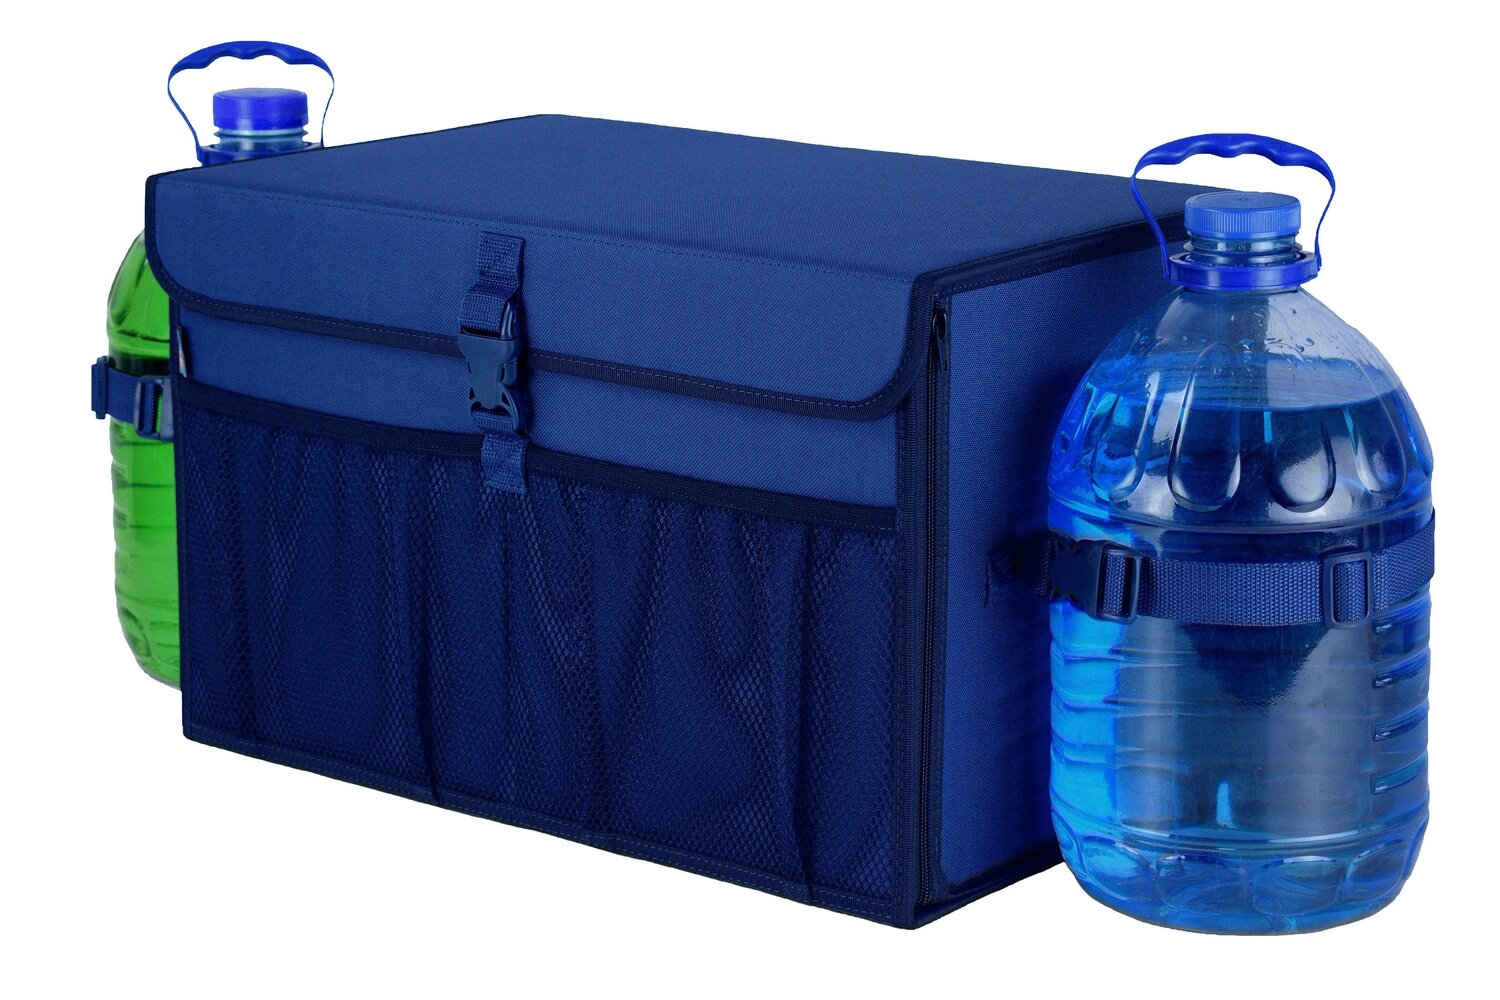 Органайзер в багажник "Лидер" (размер L). Цвет: синий.